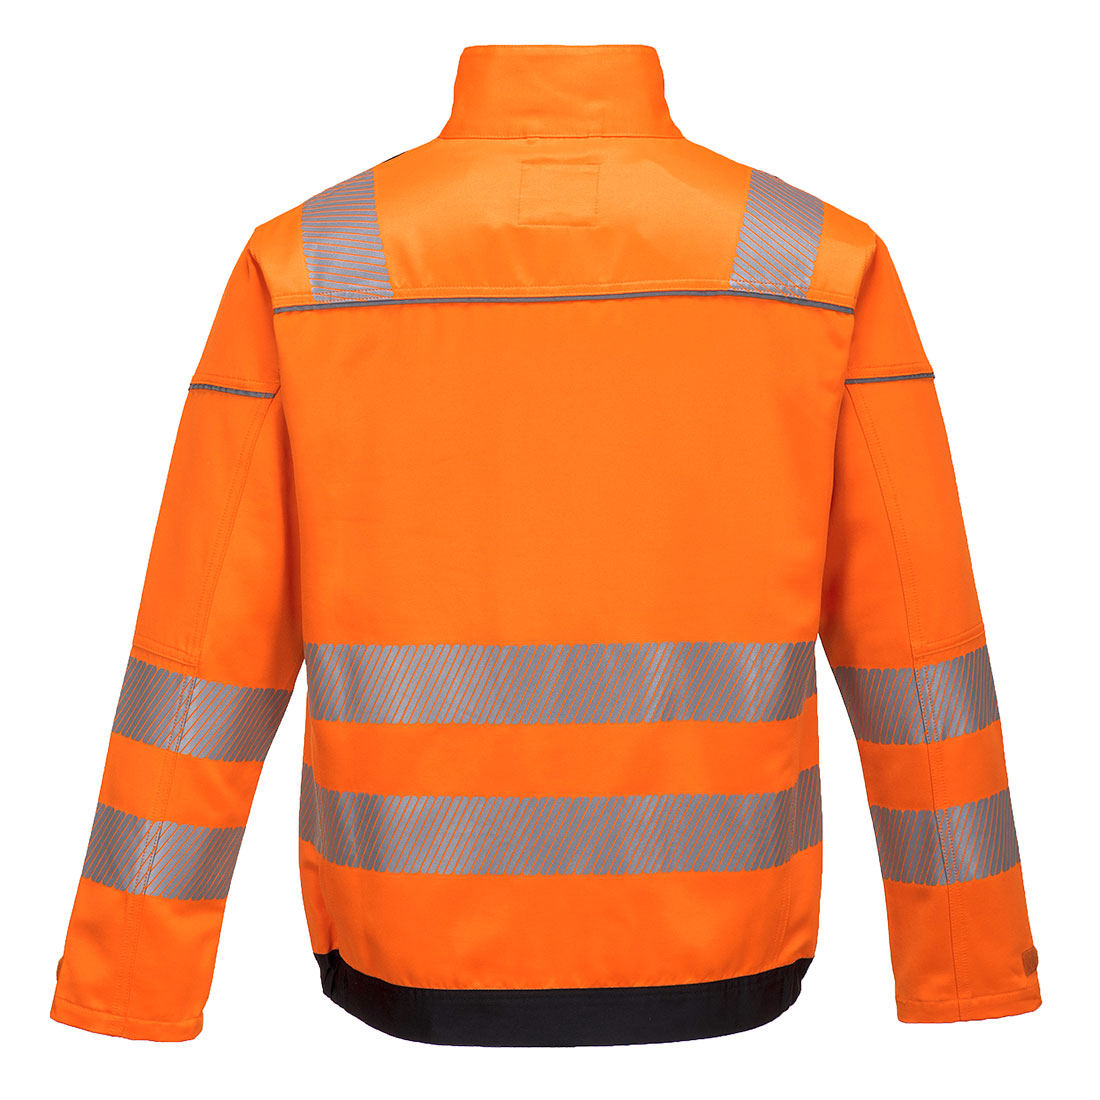 Portwest T500 PW3 Hi-Vis Work Jacket Orange Black